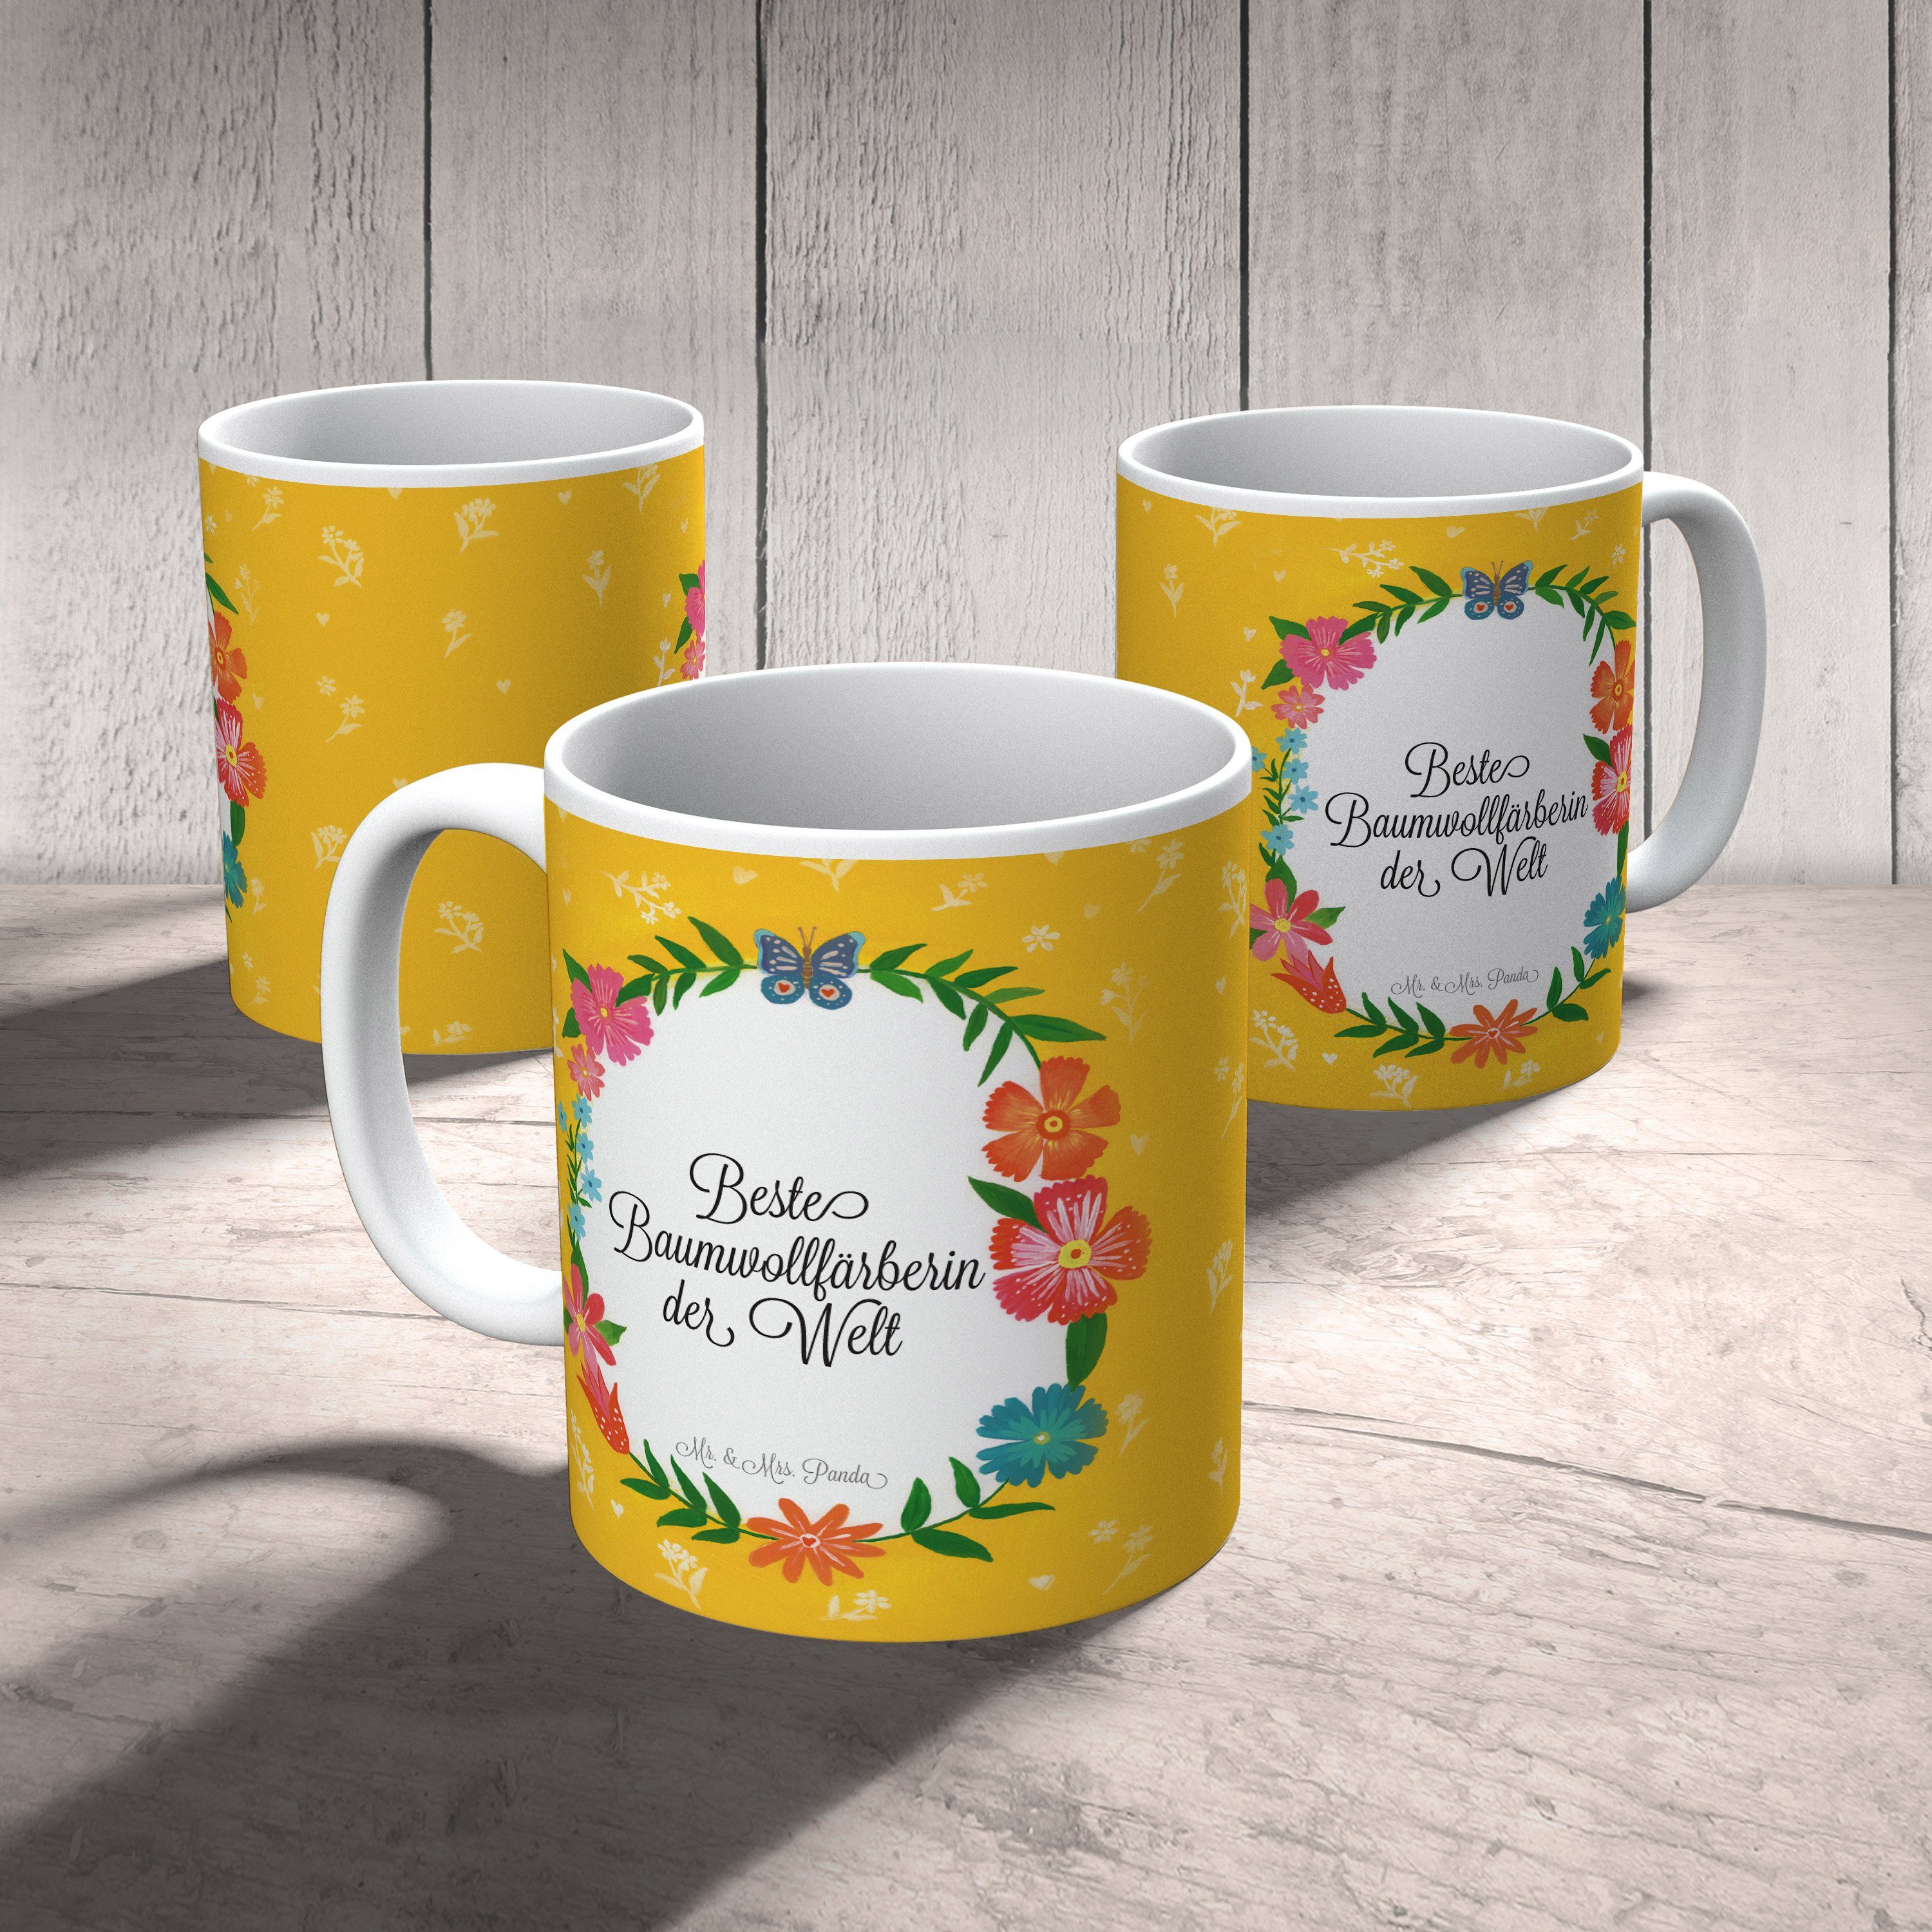 Geschenk, Panda Schenken, - Mrs. Baumwollfärberin Keramik Mr. & Rente, Tasse Kaffeebecher, Teetasse,